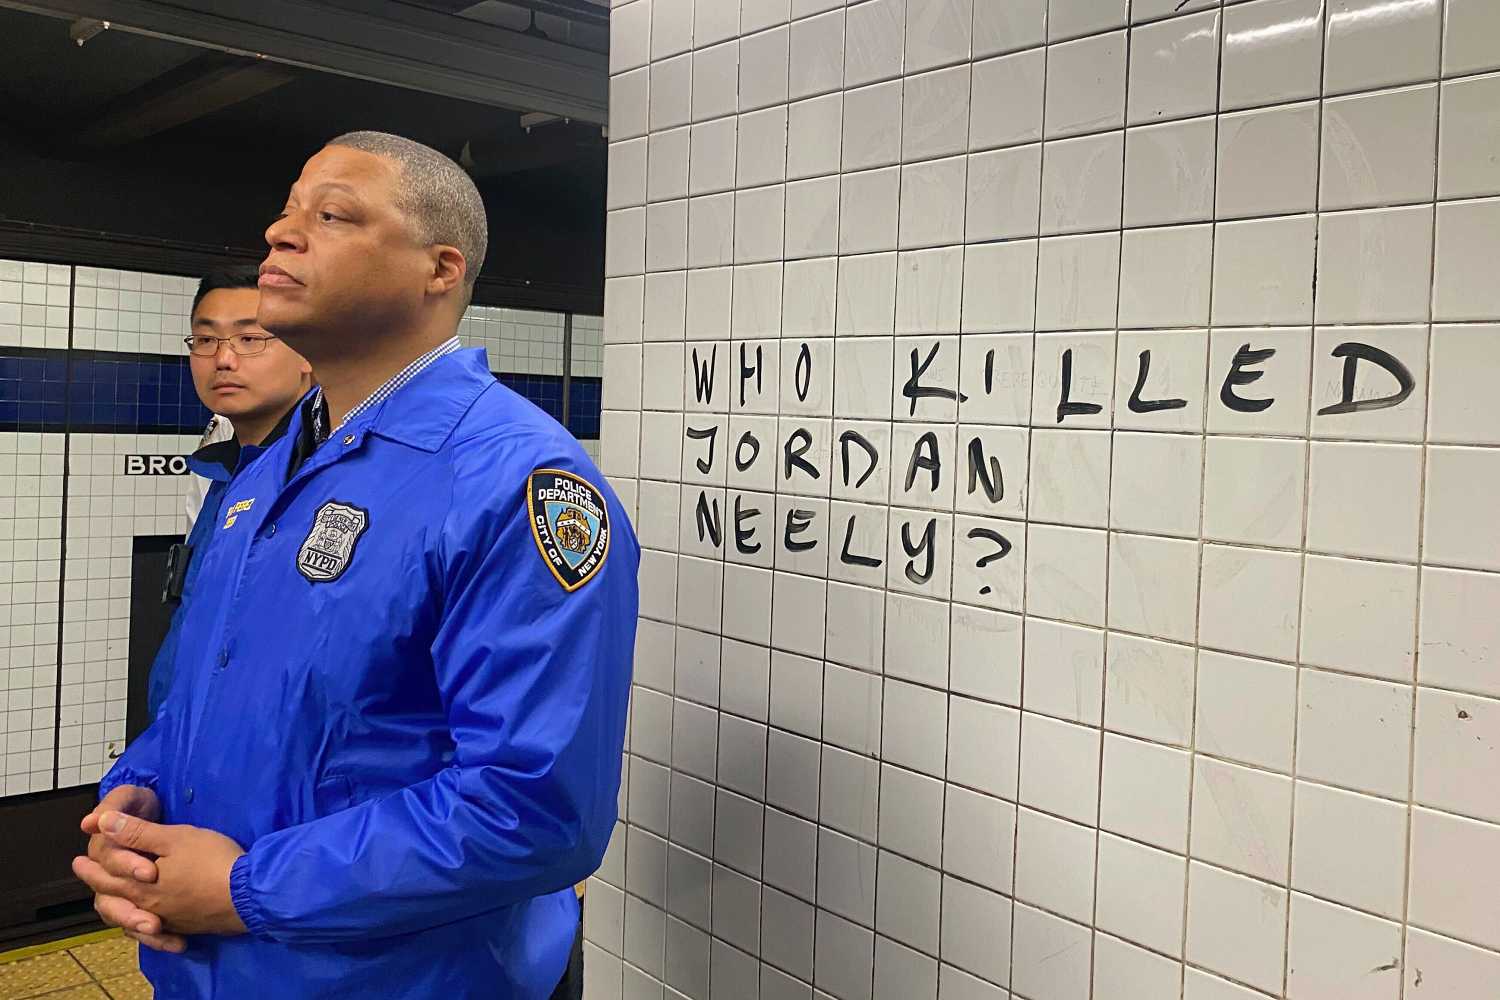 Πεζοναύτης έπνιξε φτωχό καλλιτέχνη δρόμου που παρακαλούσε για νερό και φαγητό στο μετρό